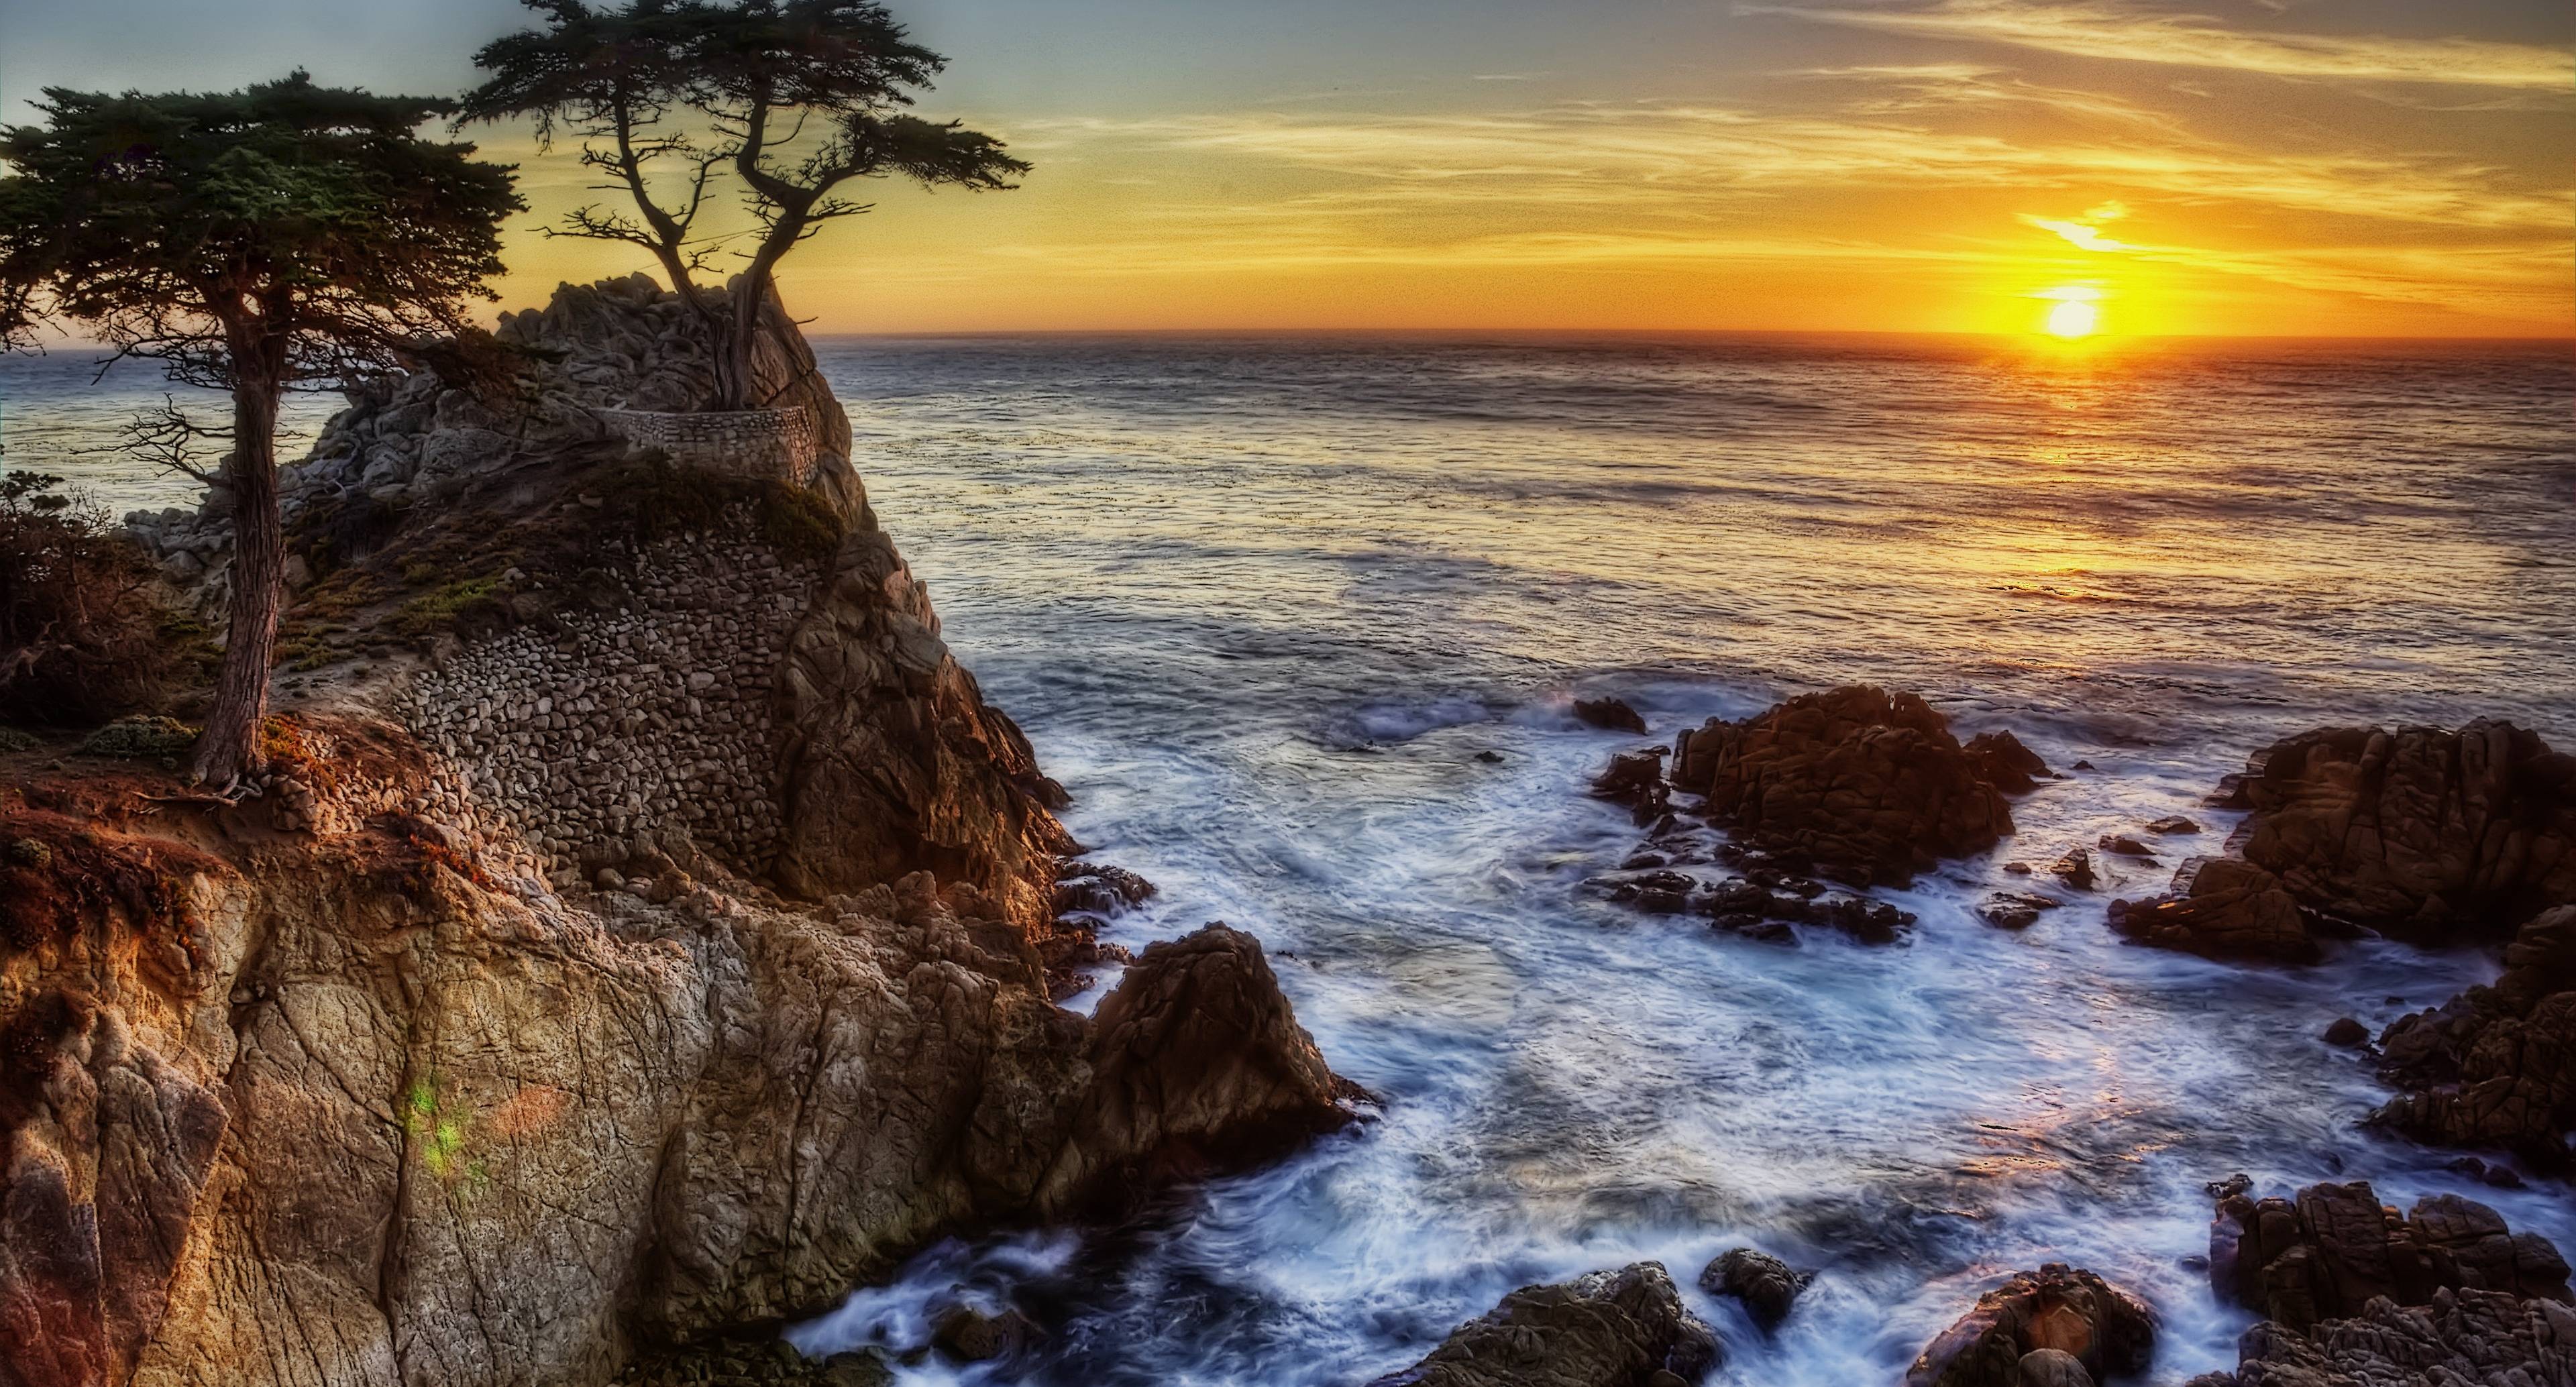 Vue magnifique sur la baie de Monterey